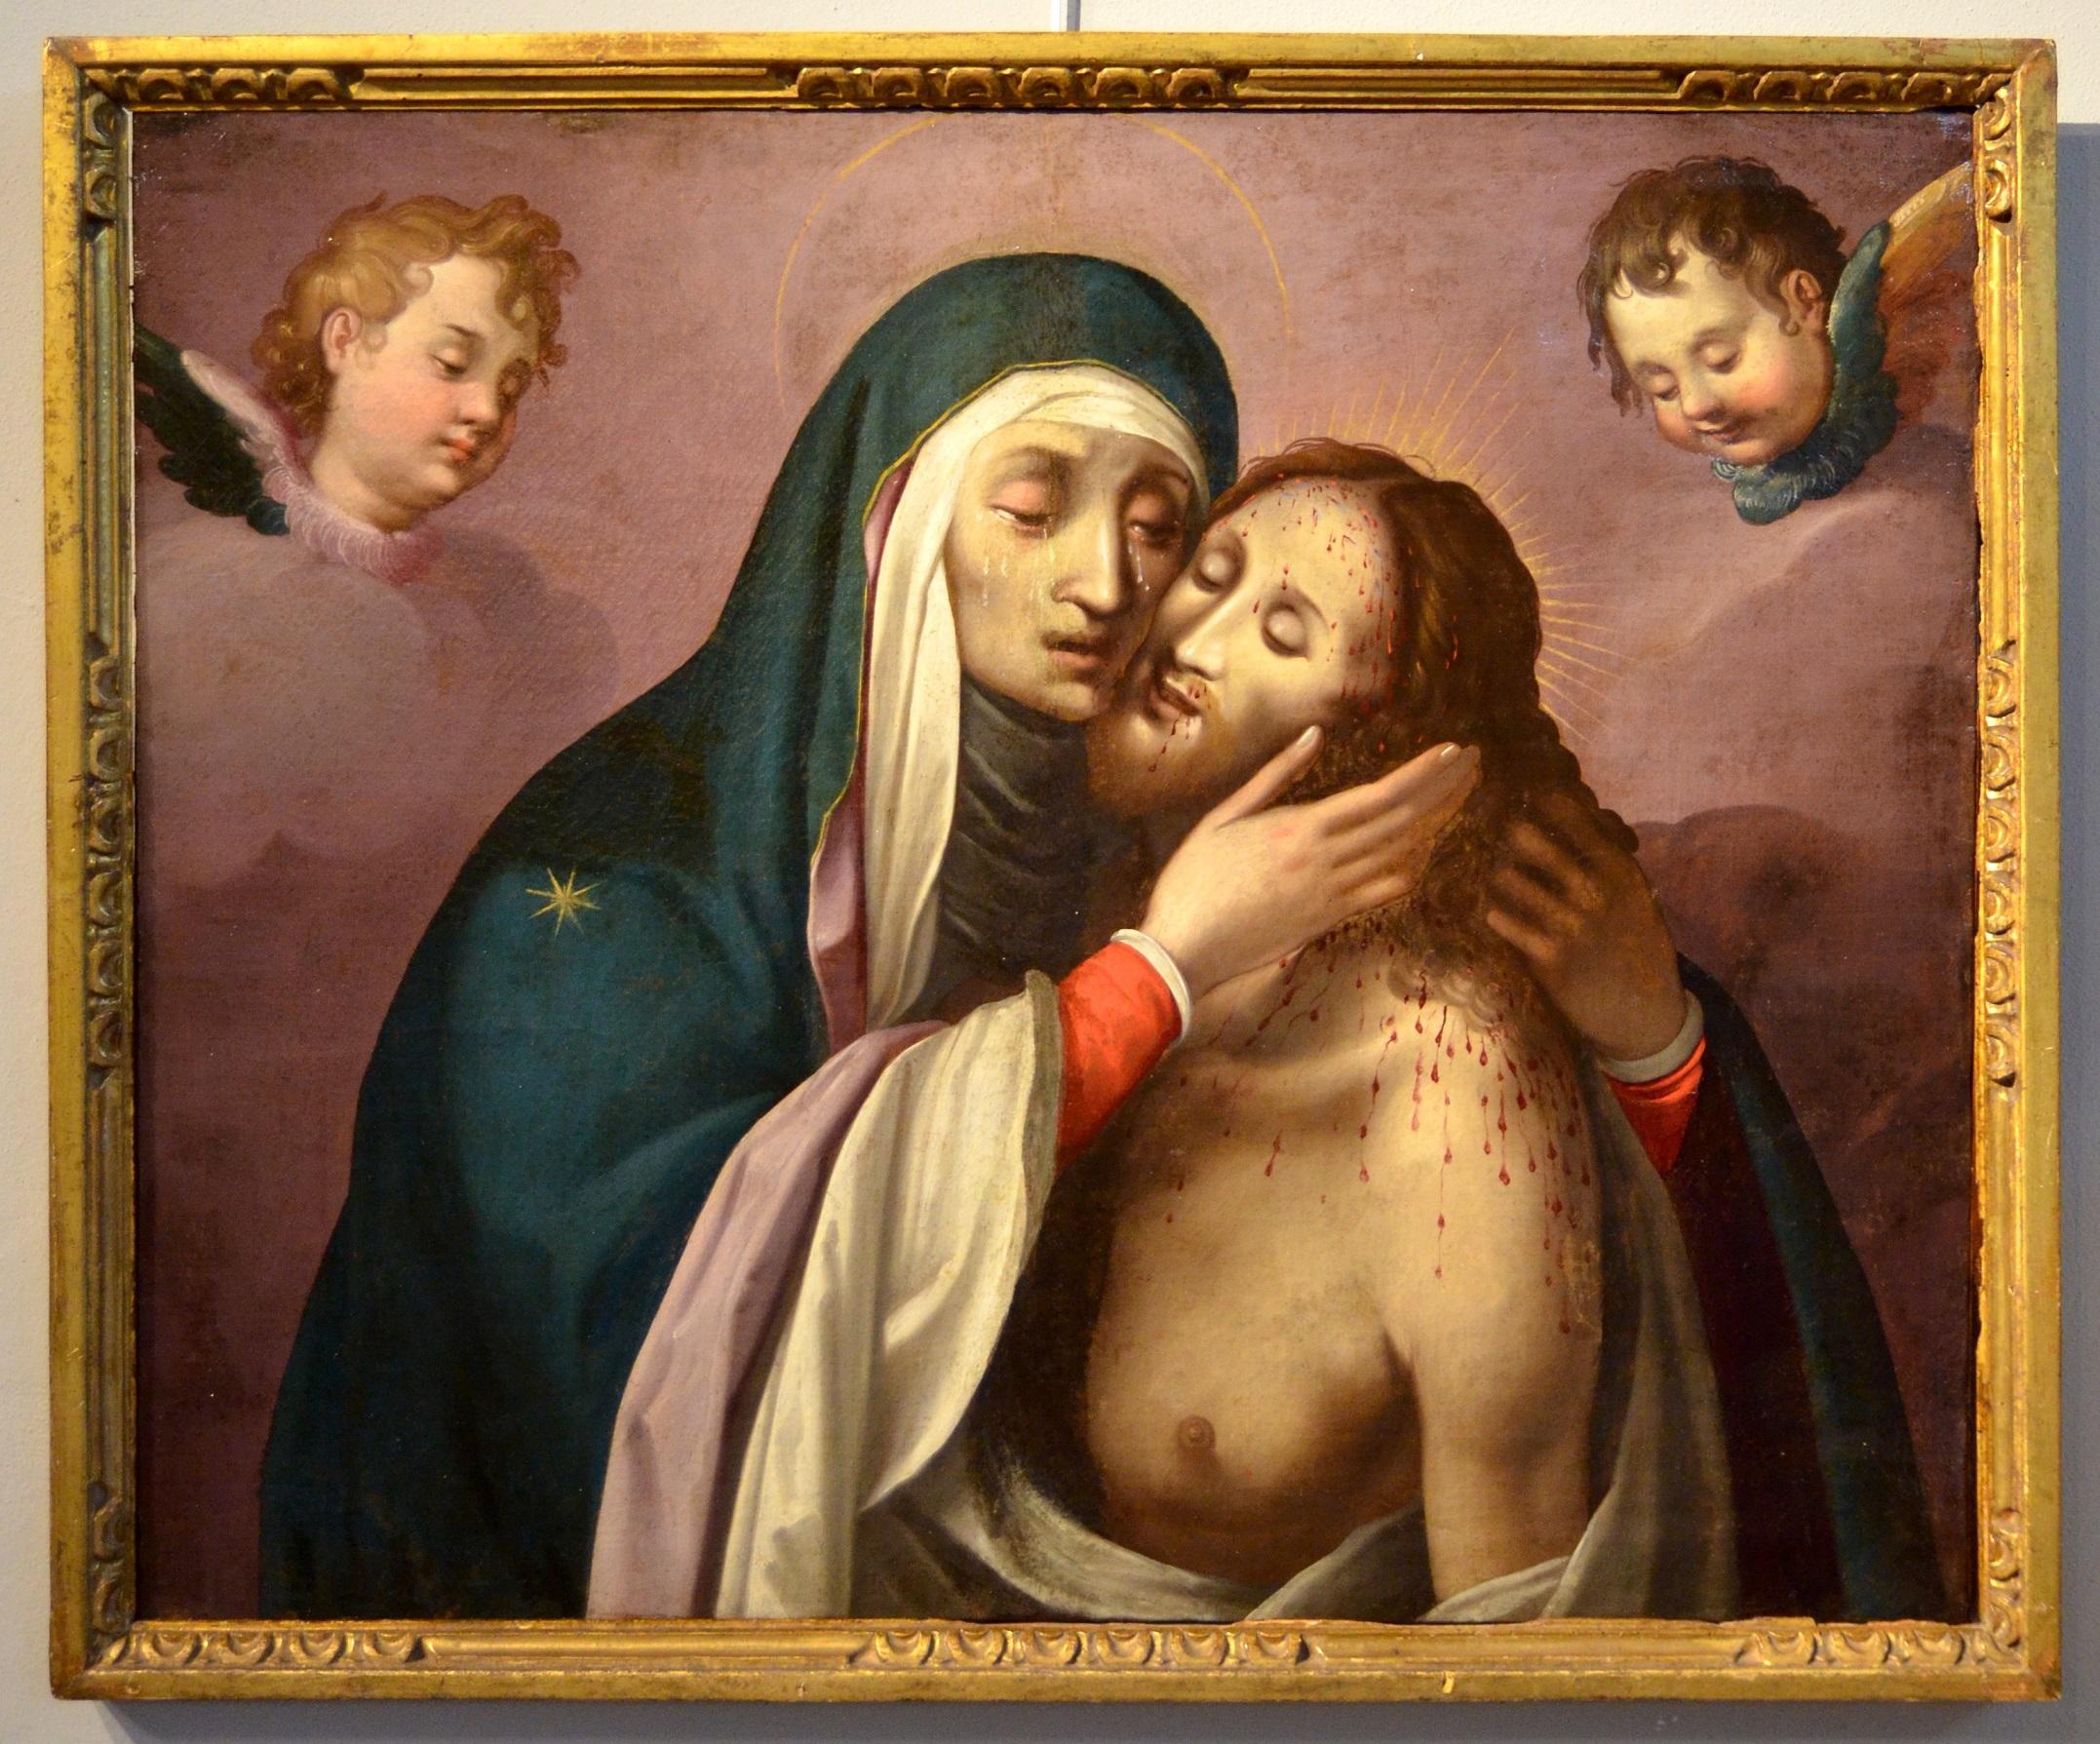 Pietà Cherubs Paint Oil on canvas Religious Rome 16/17th Century Michelangelo